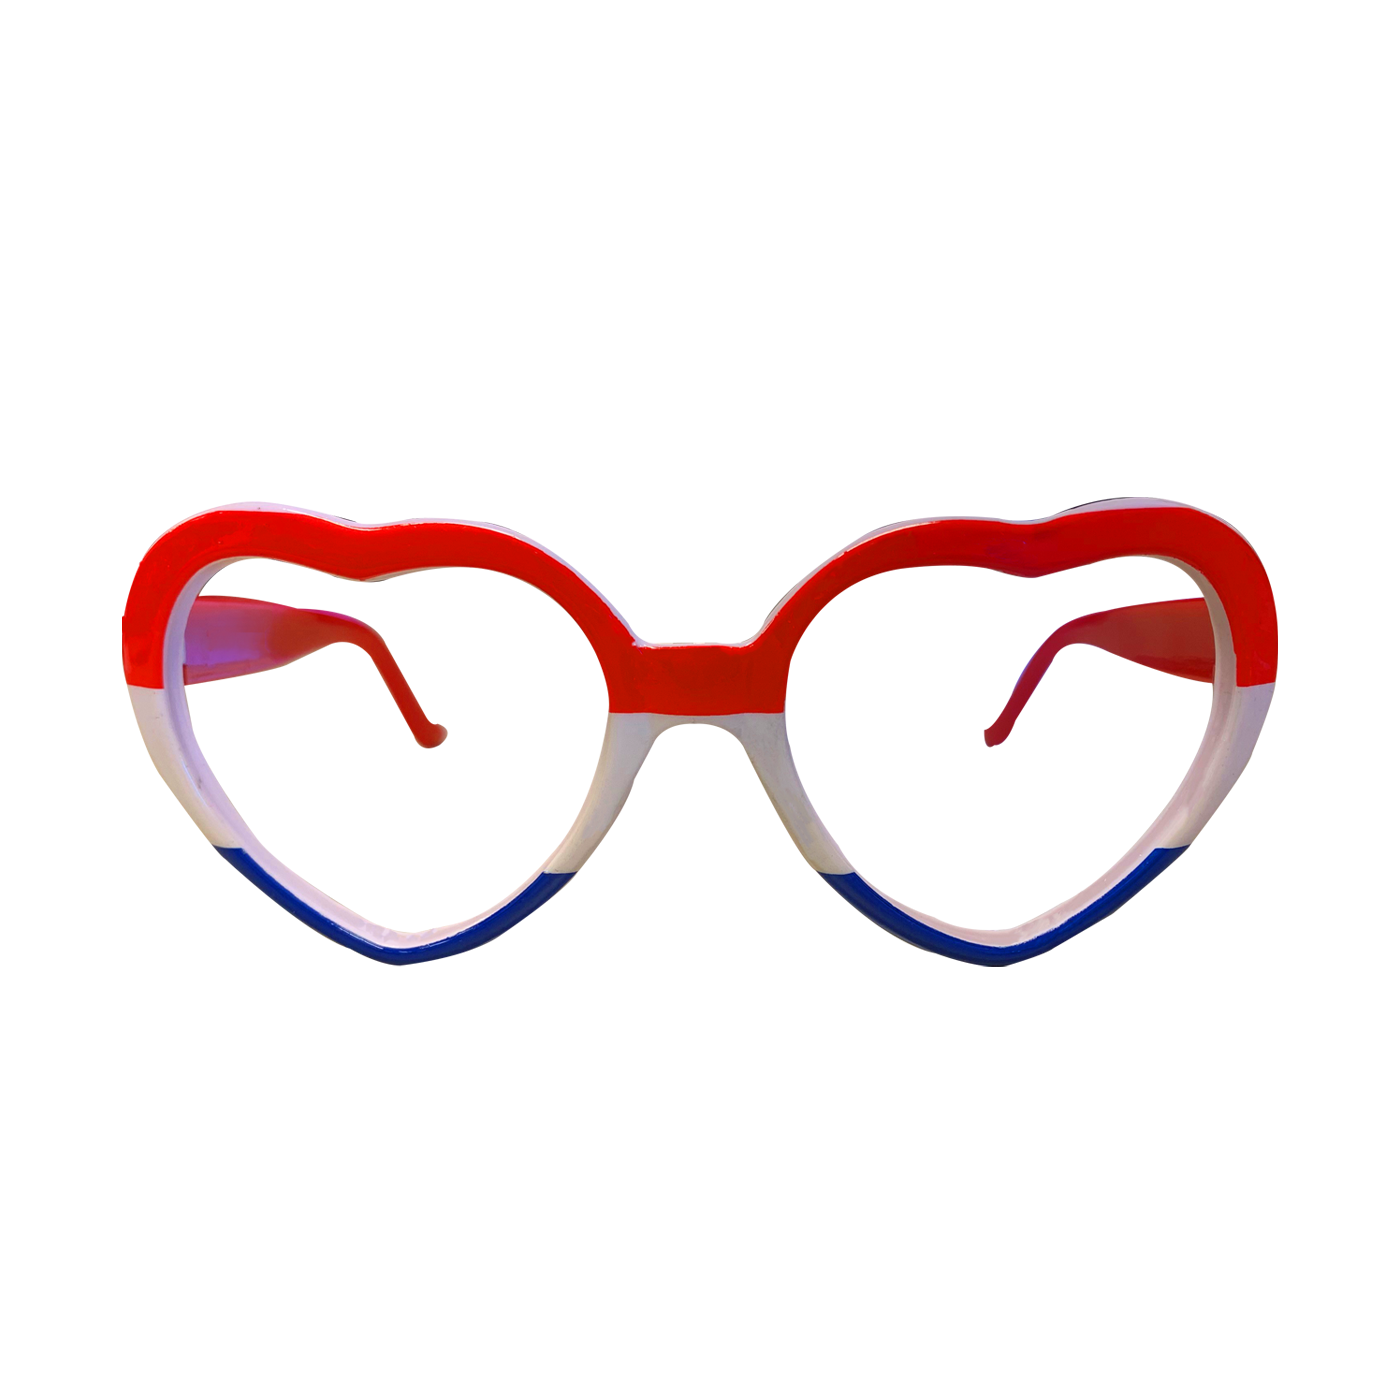 Hartjes bril - Rood/wit/blauw kopen